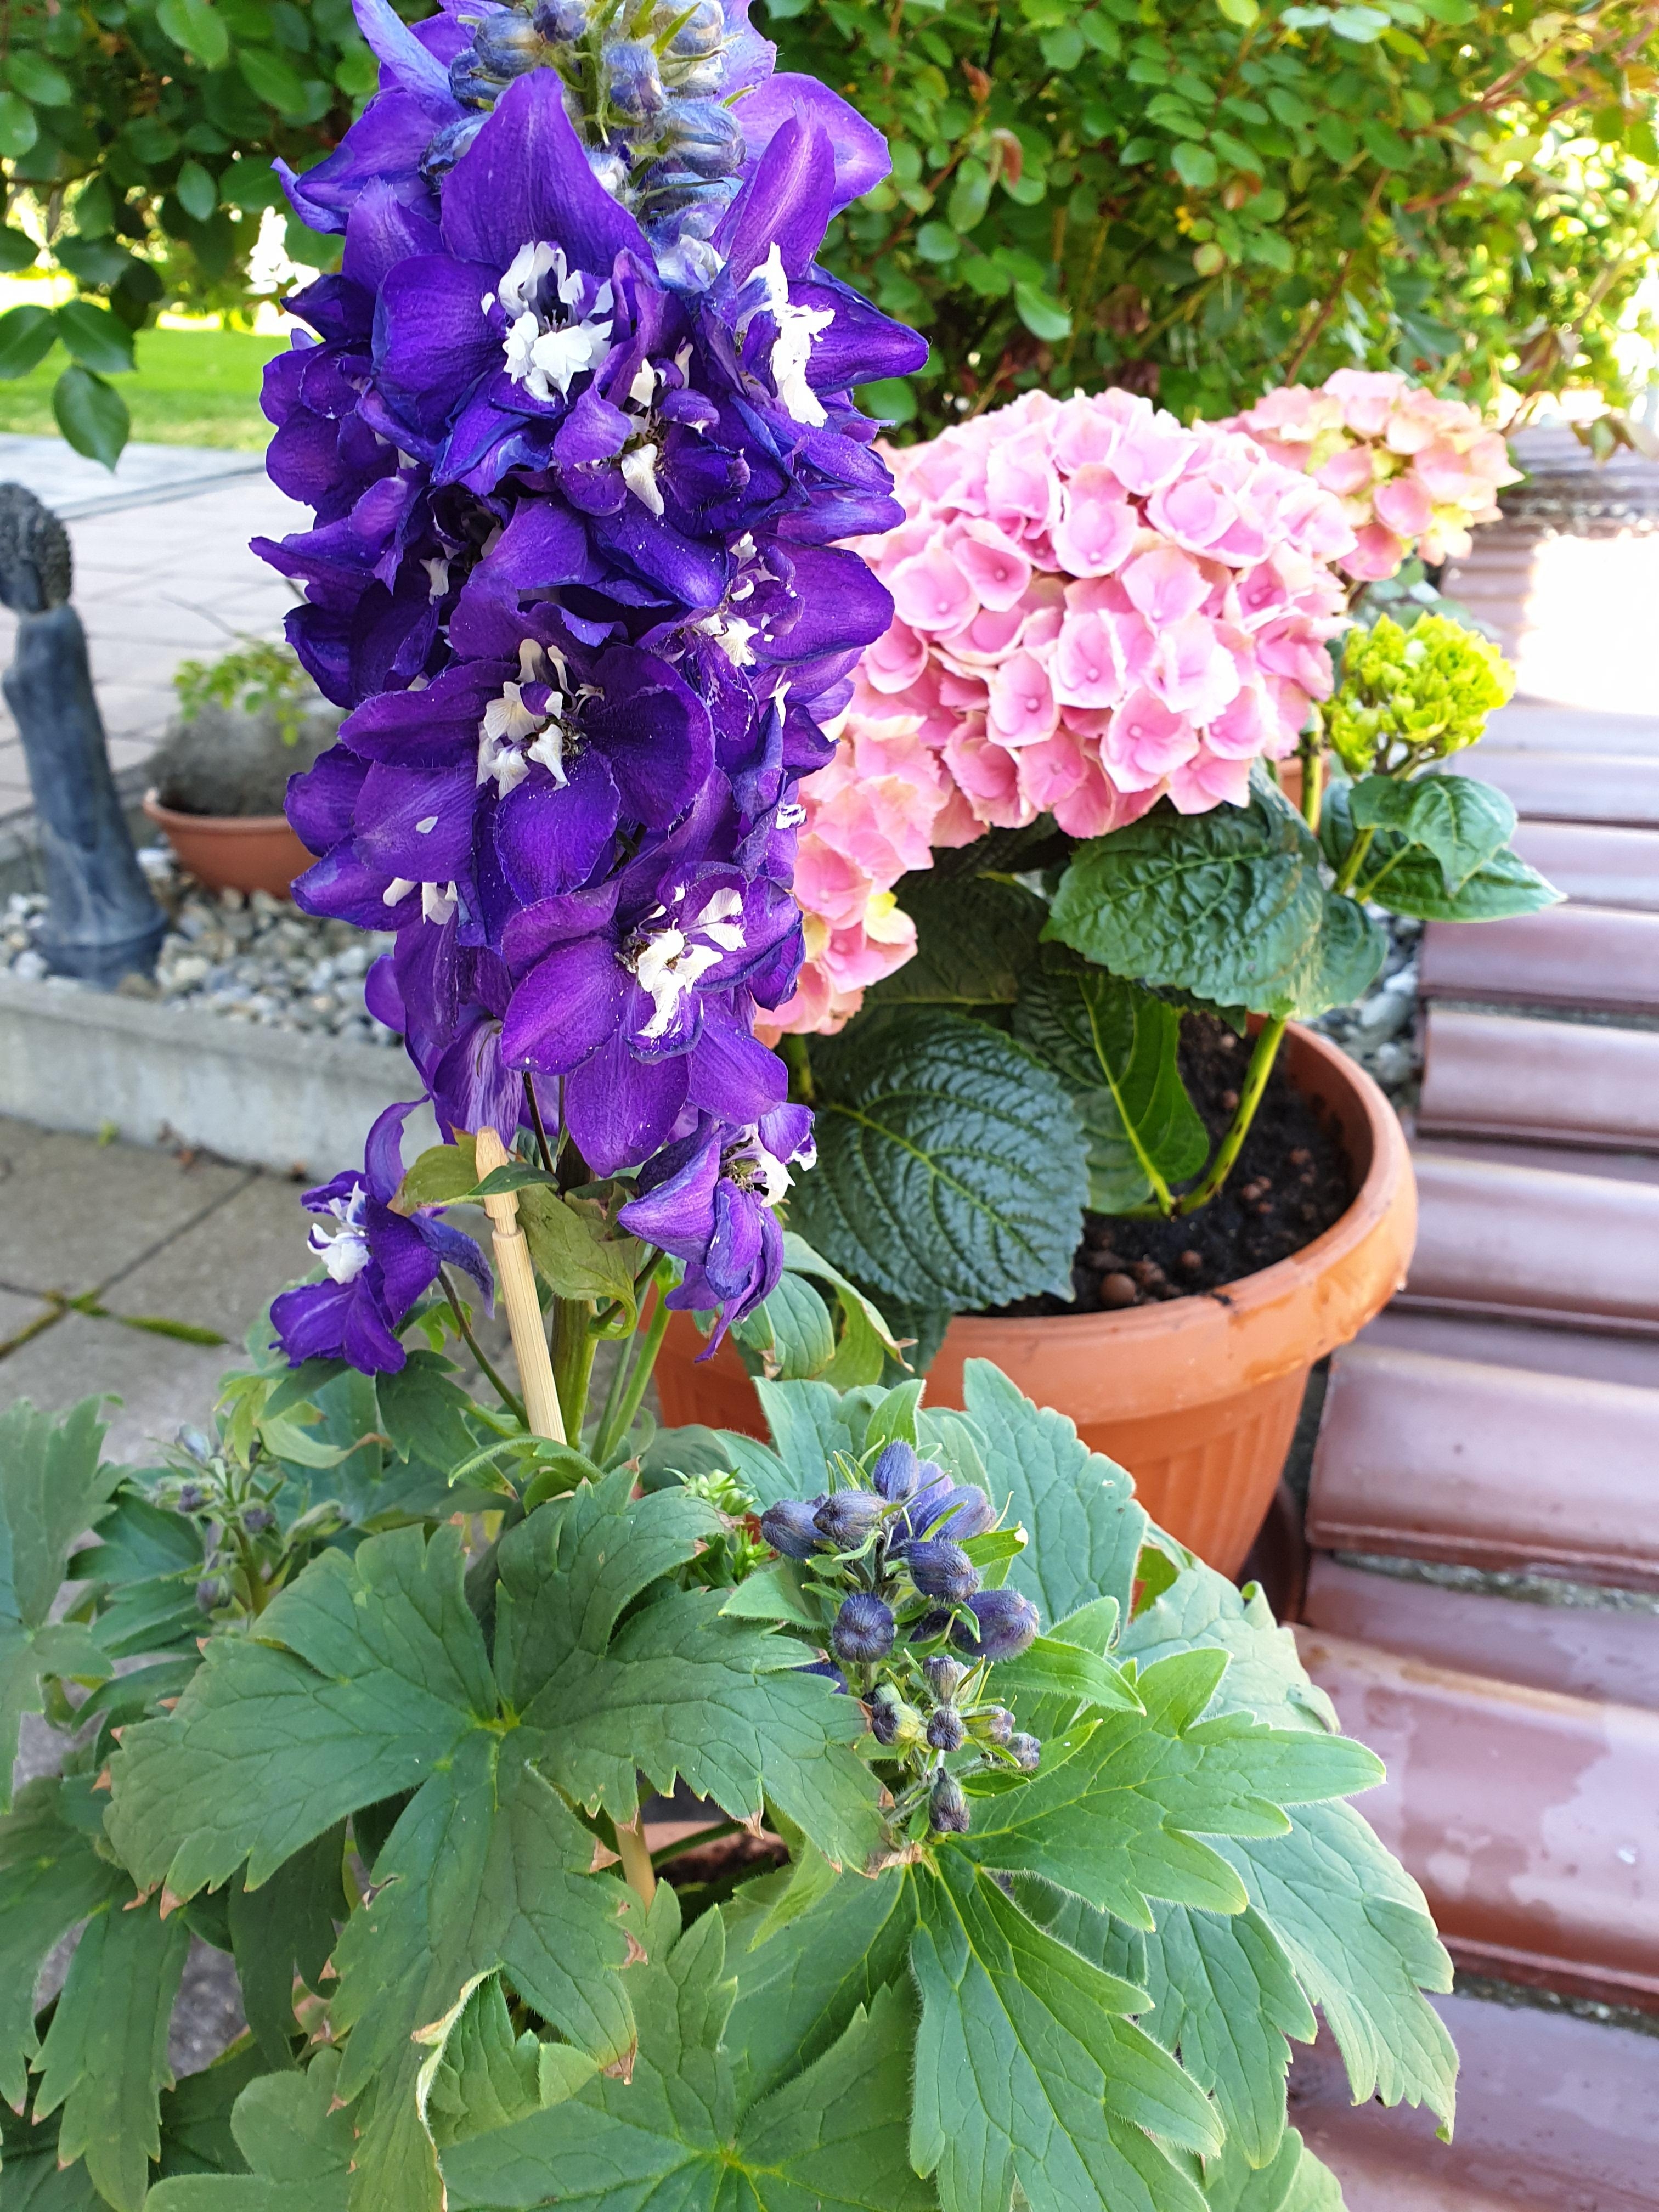 Bei dem schönen Wetter ist #gartenzeit ⚘🌿🍀🌳  #rittersporn #hortensie #flowers #blumen #allesblüht